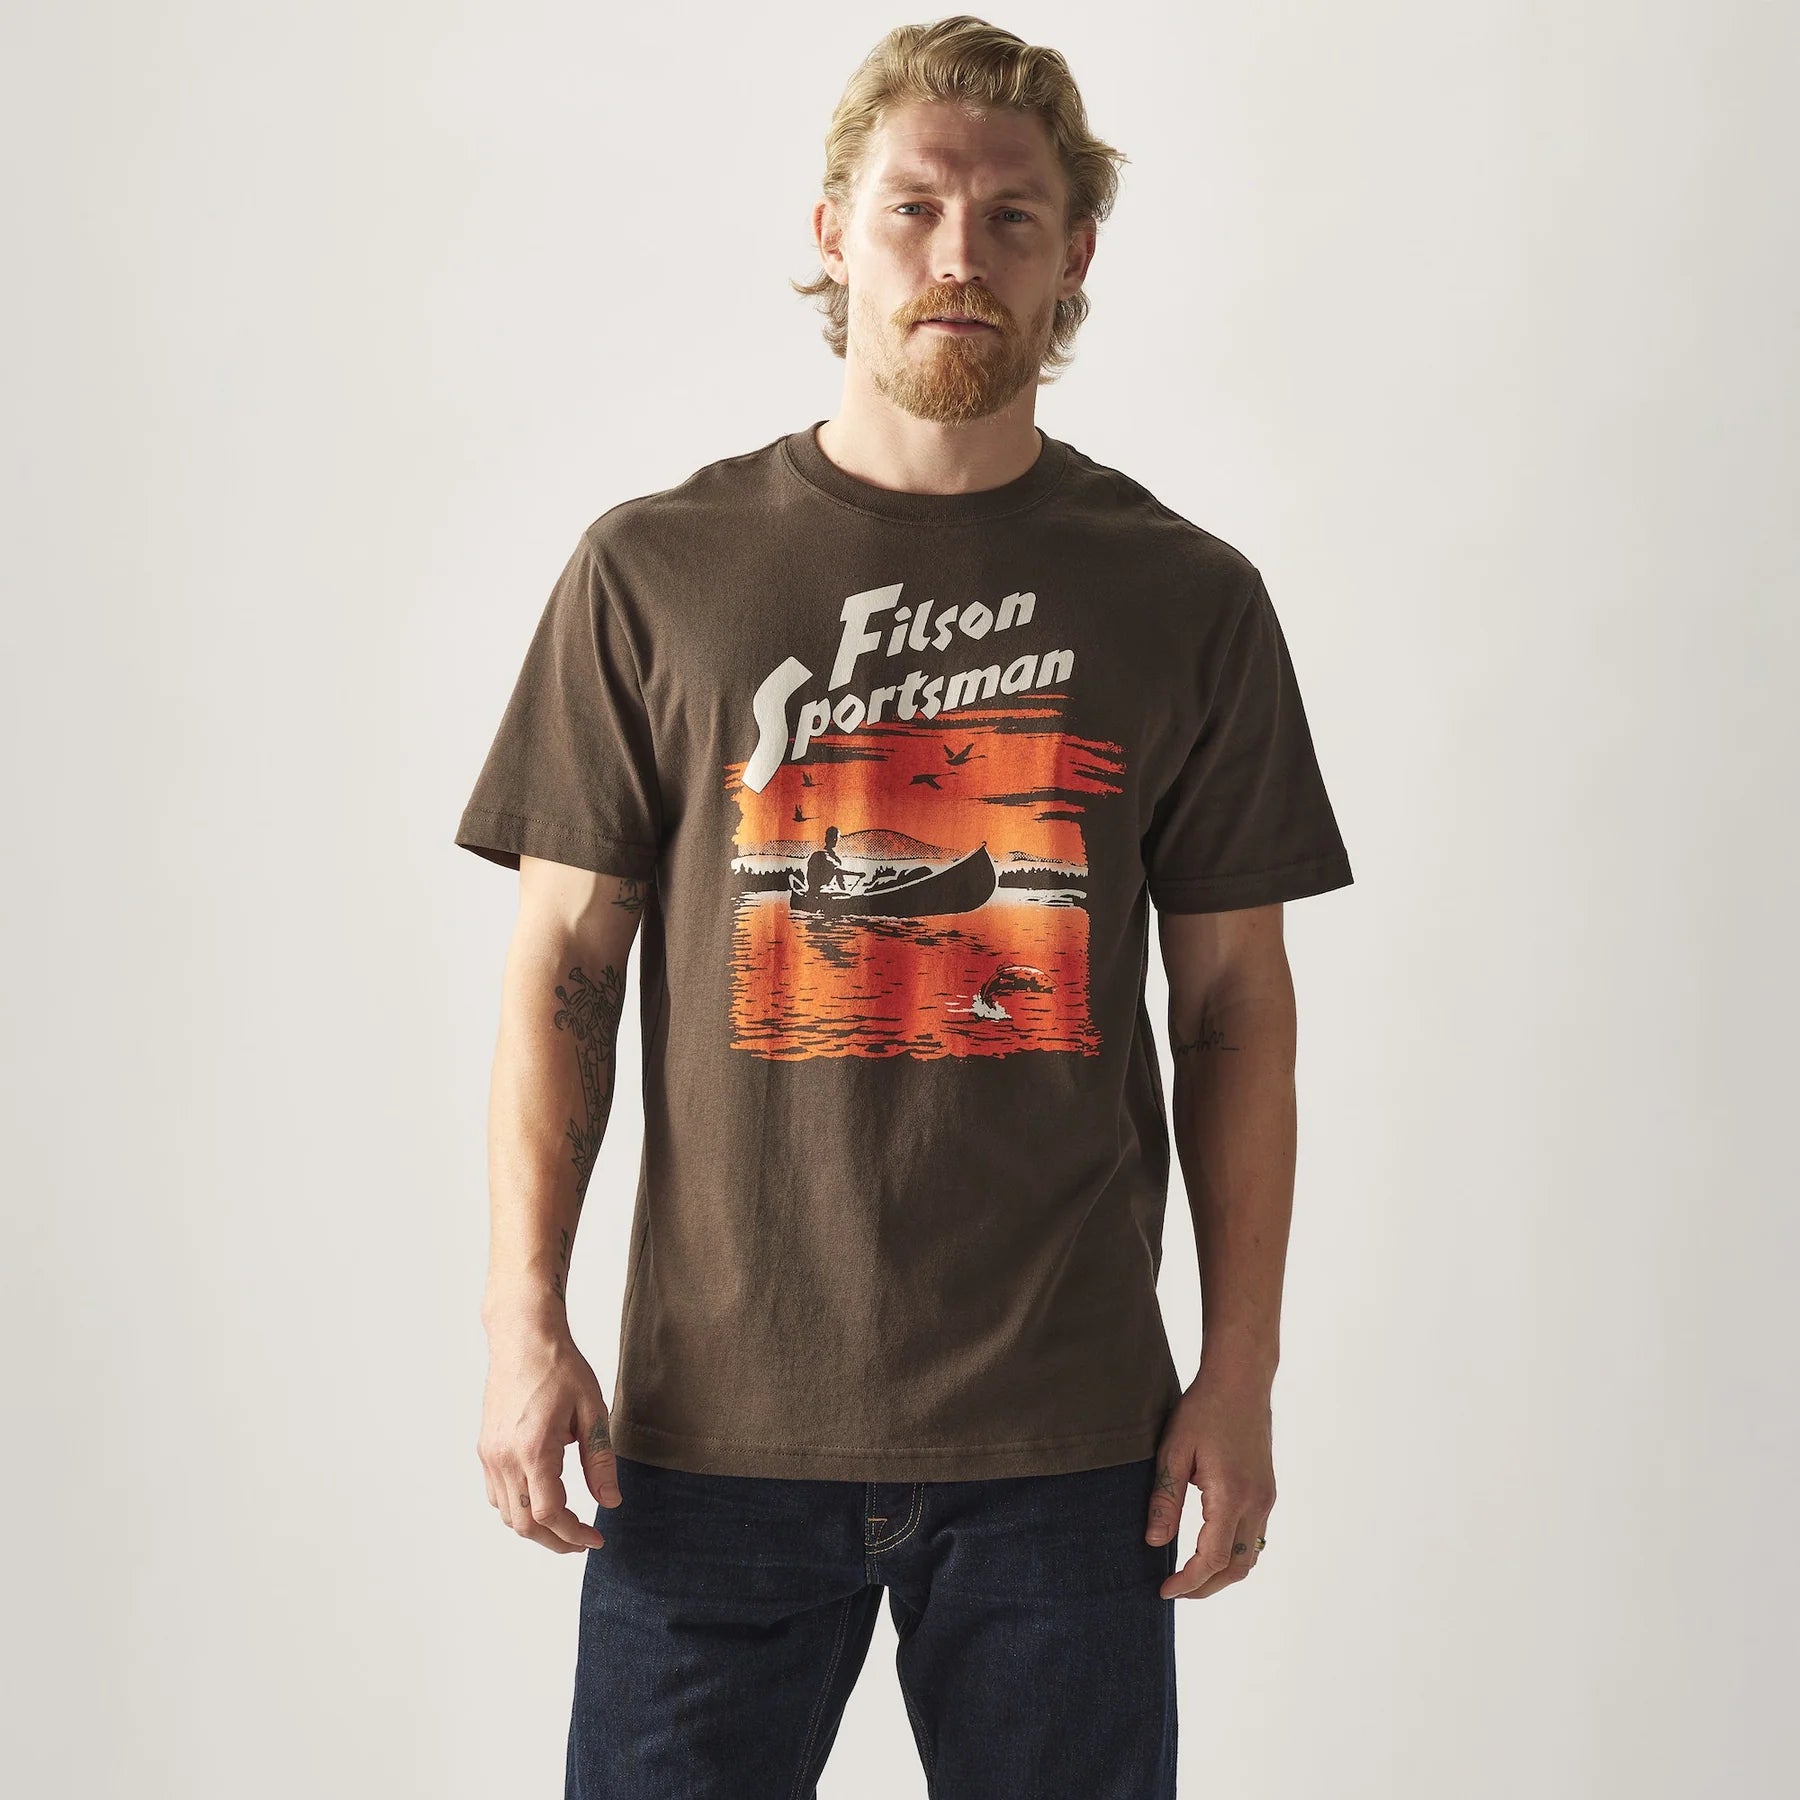 USA製 FILSON フィルソン グラフィック Tシャツ サイズS - Tシャツ 